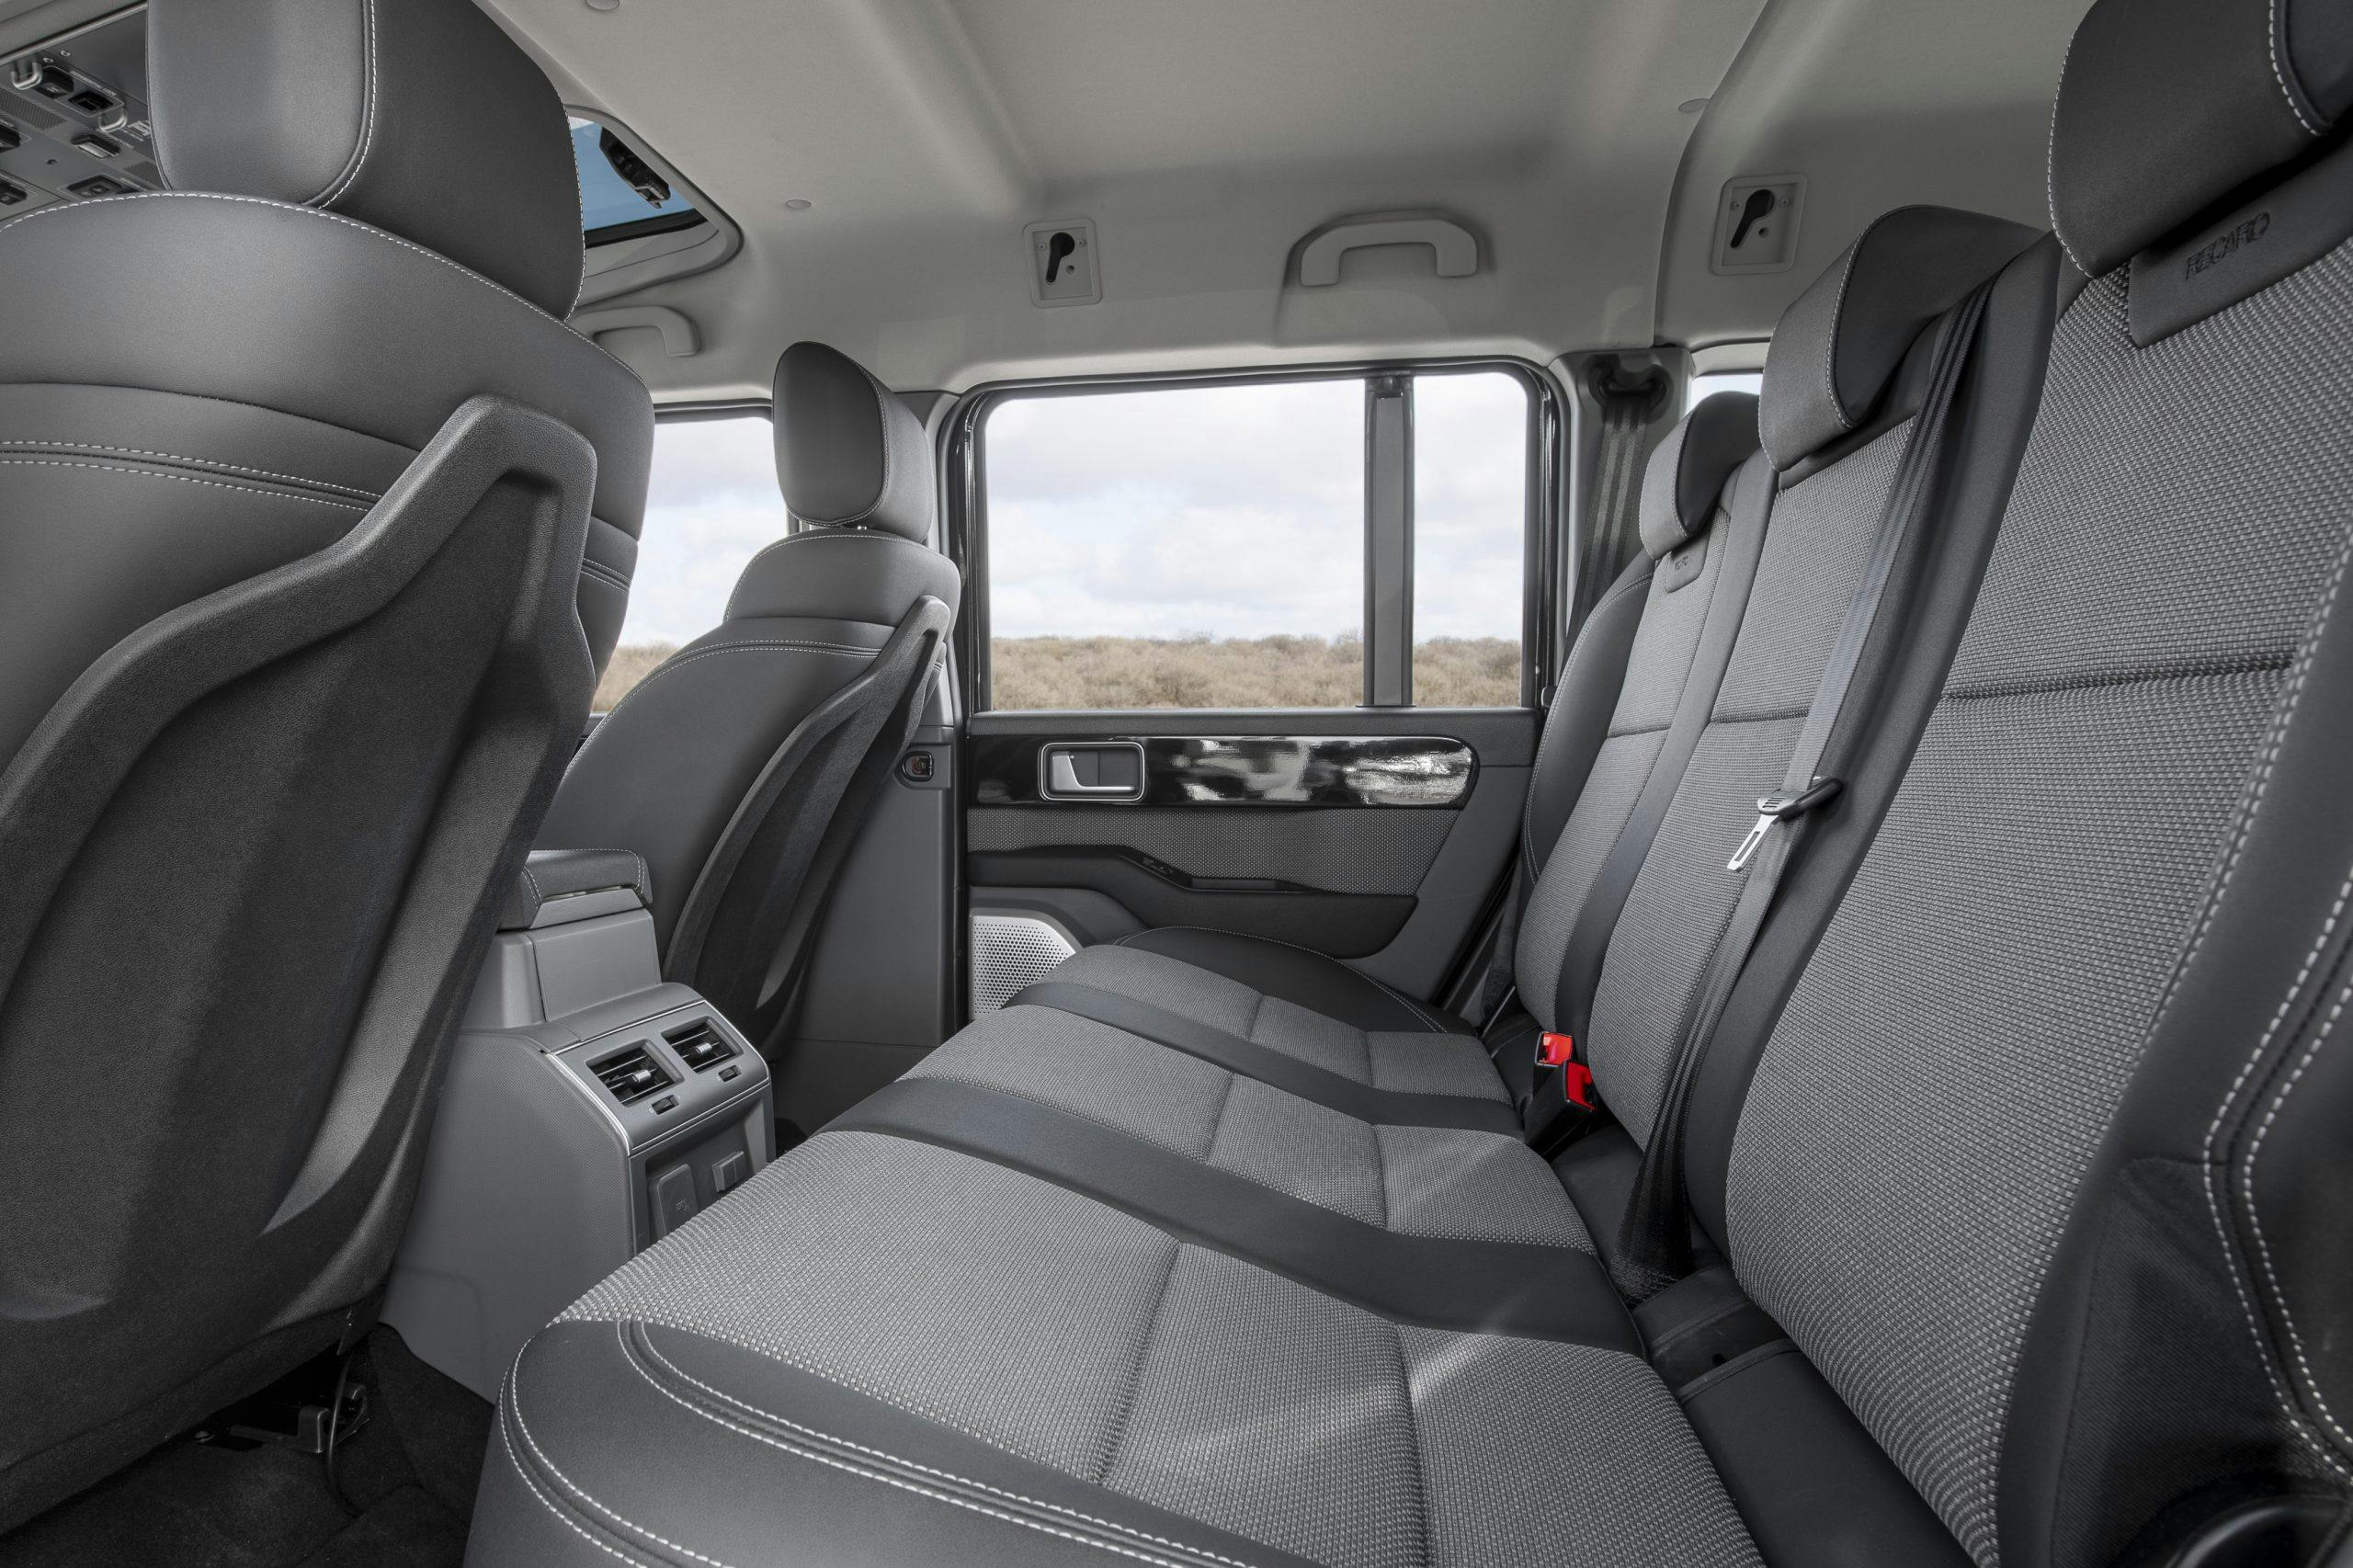 2022 Ineos Grenadier 4x4 interior rear seat